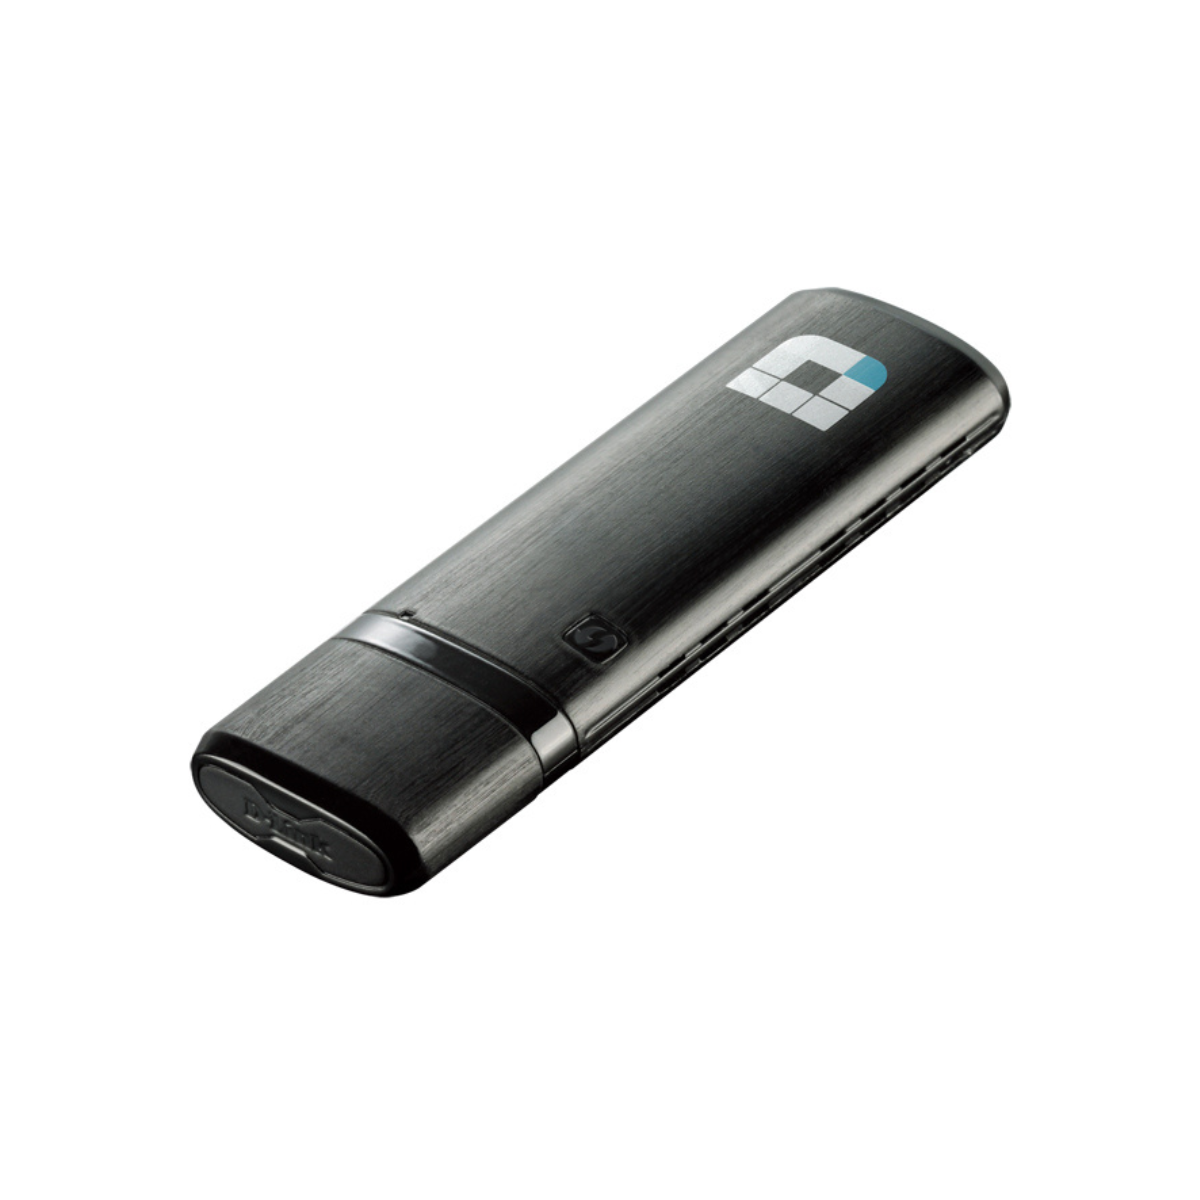 AC1300 MU-MIMO Wi-Fi USB Adapter | DWA-182